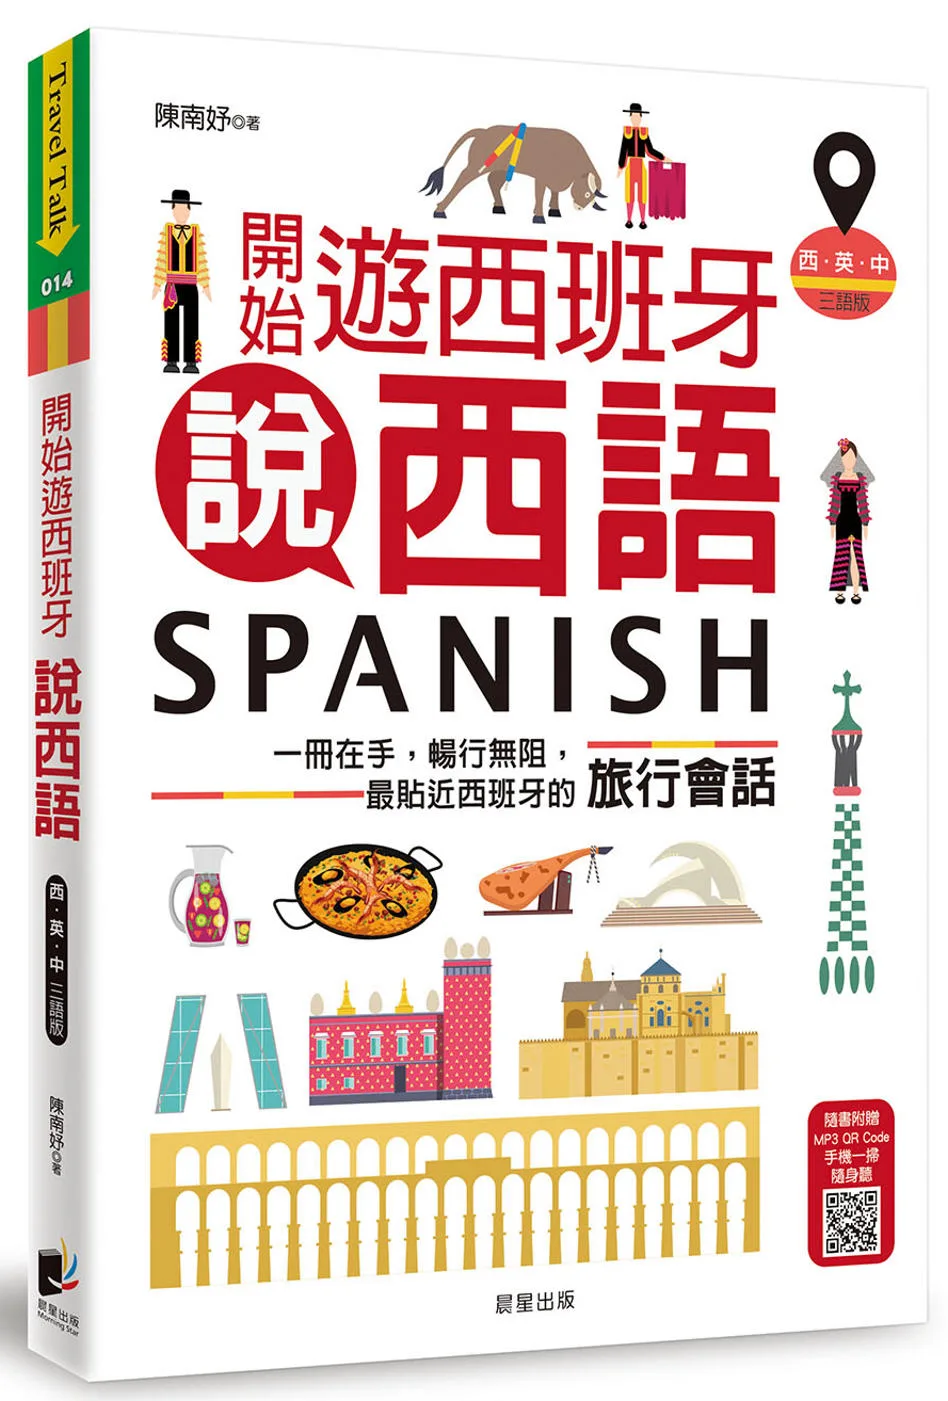 開始遊西班牙說西語（西•英•中三語版）：一冊在手，暢行無阻，最貼近西班牙的旅行會話